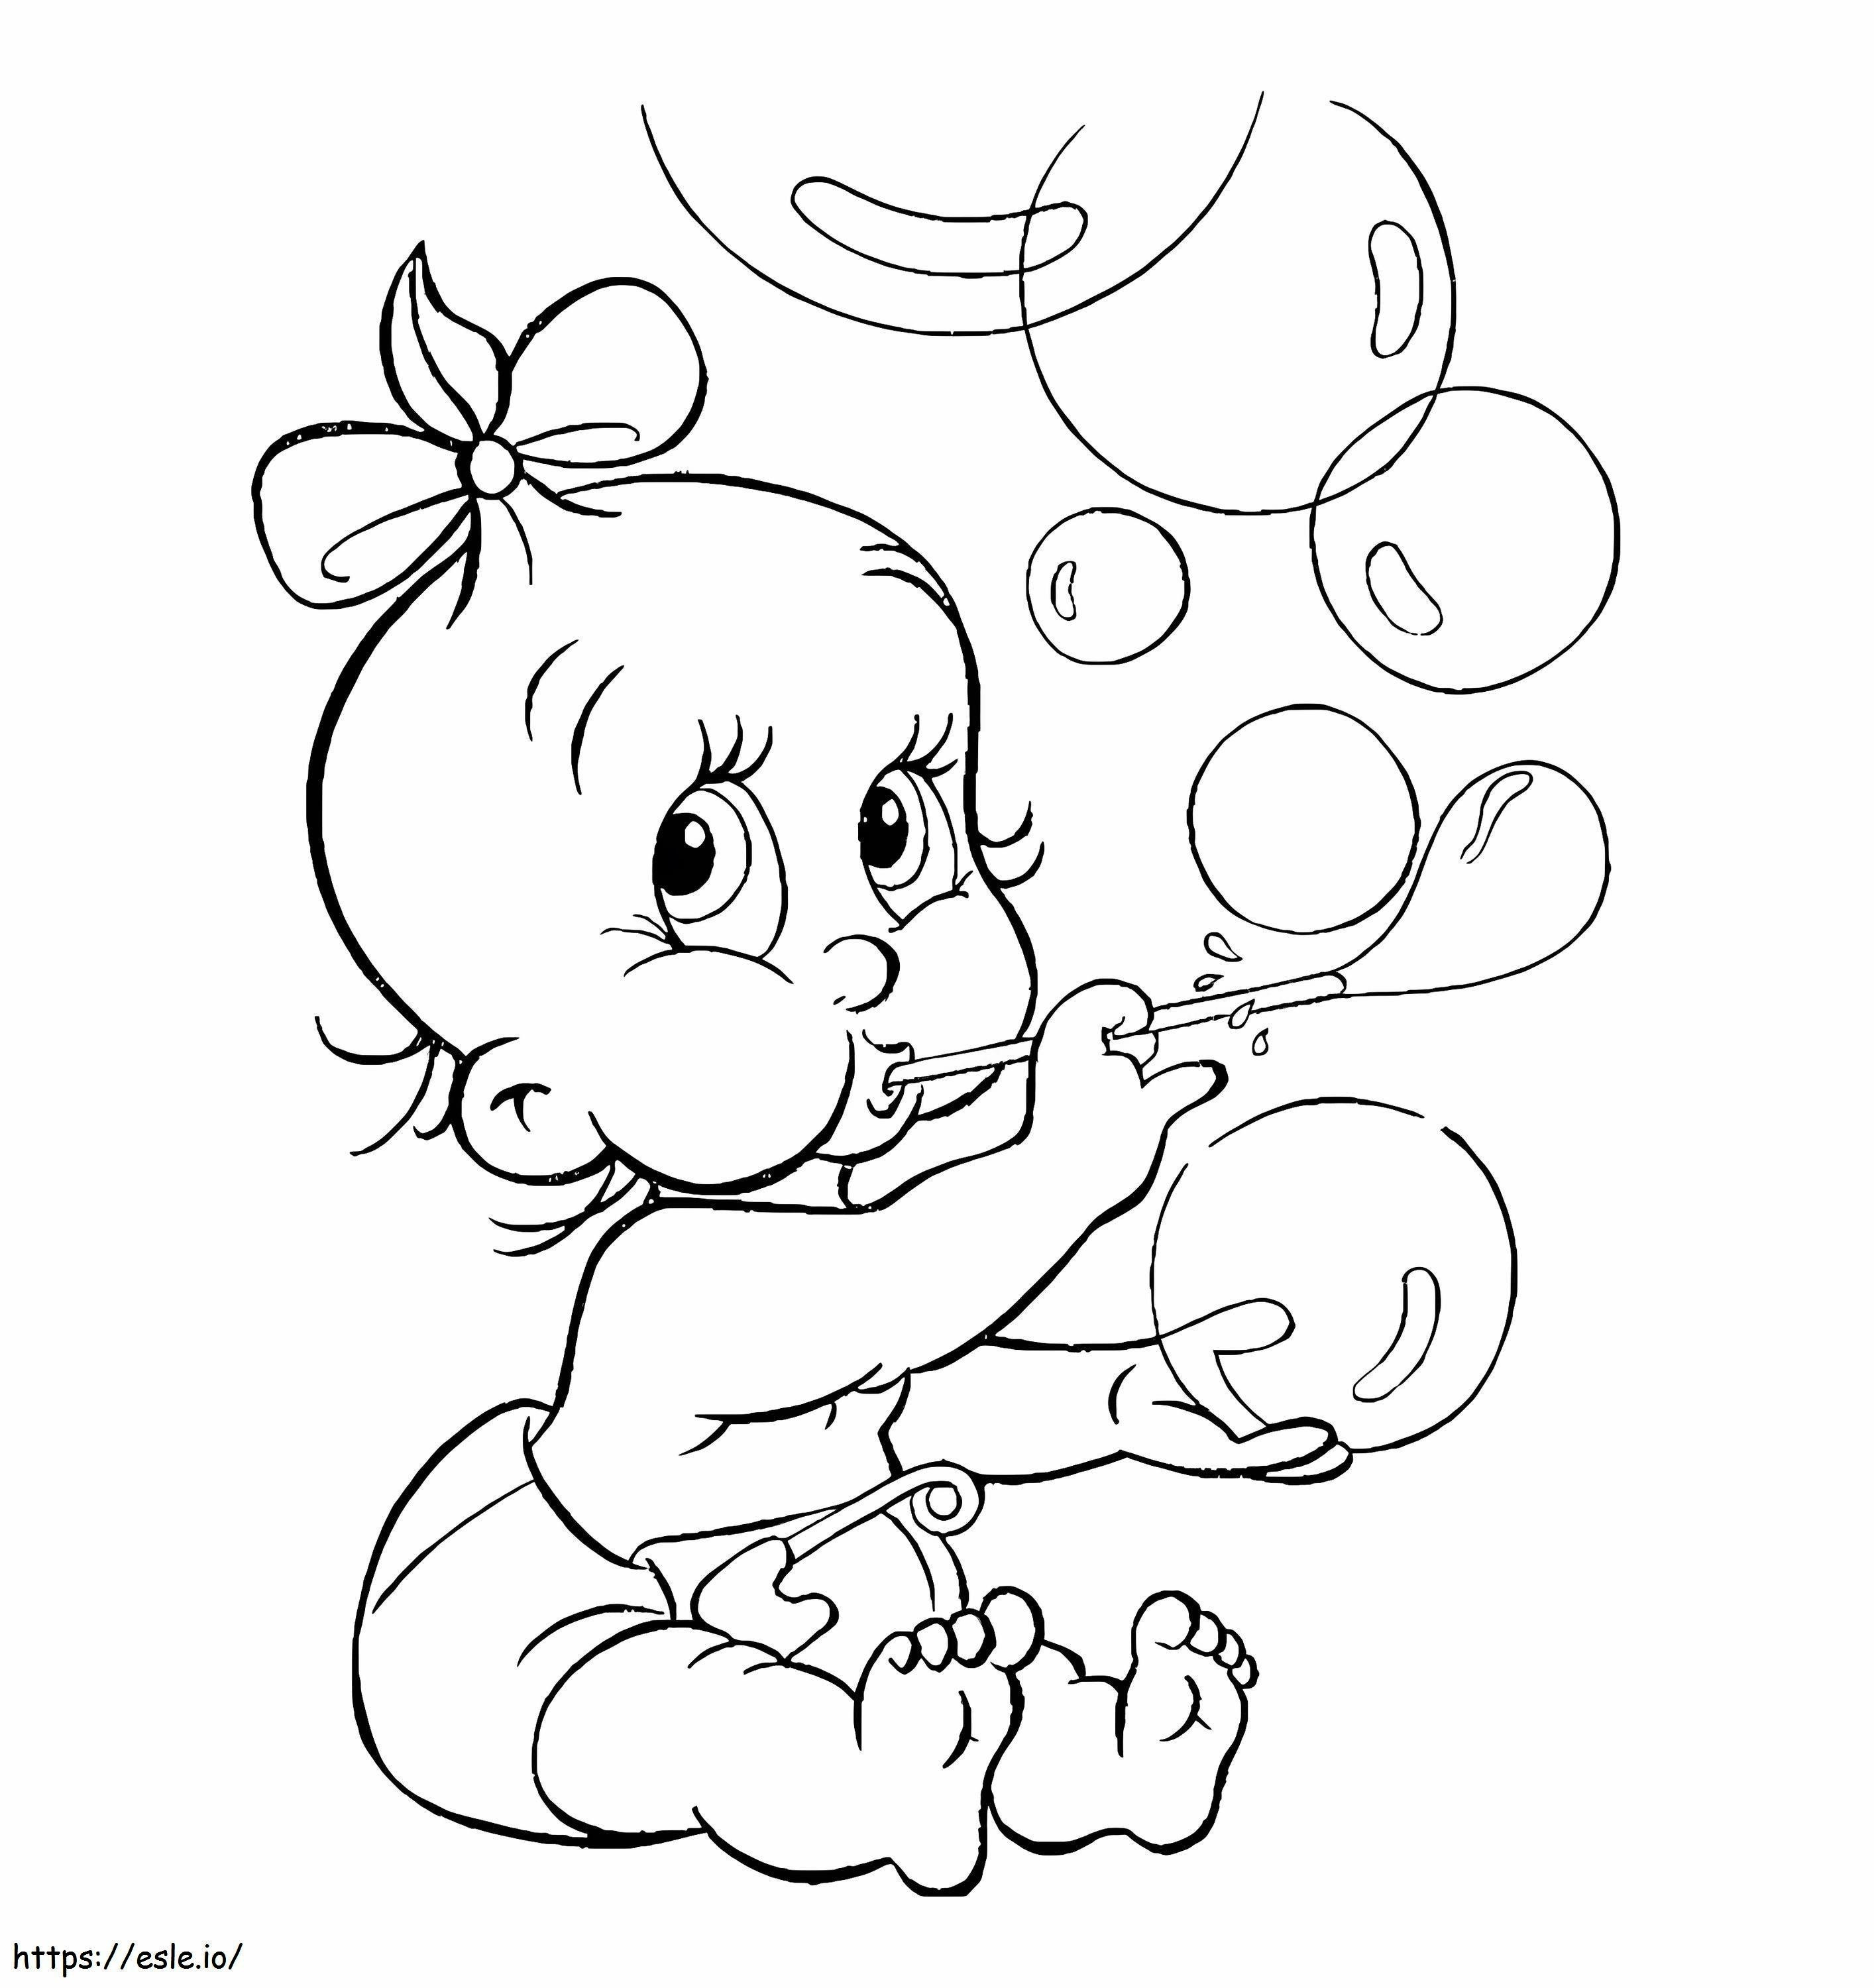 Coloriage Bébé et bulles à imprimer dessin